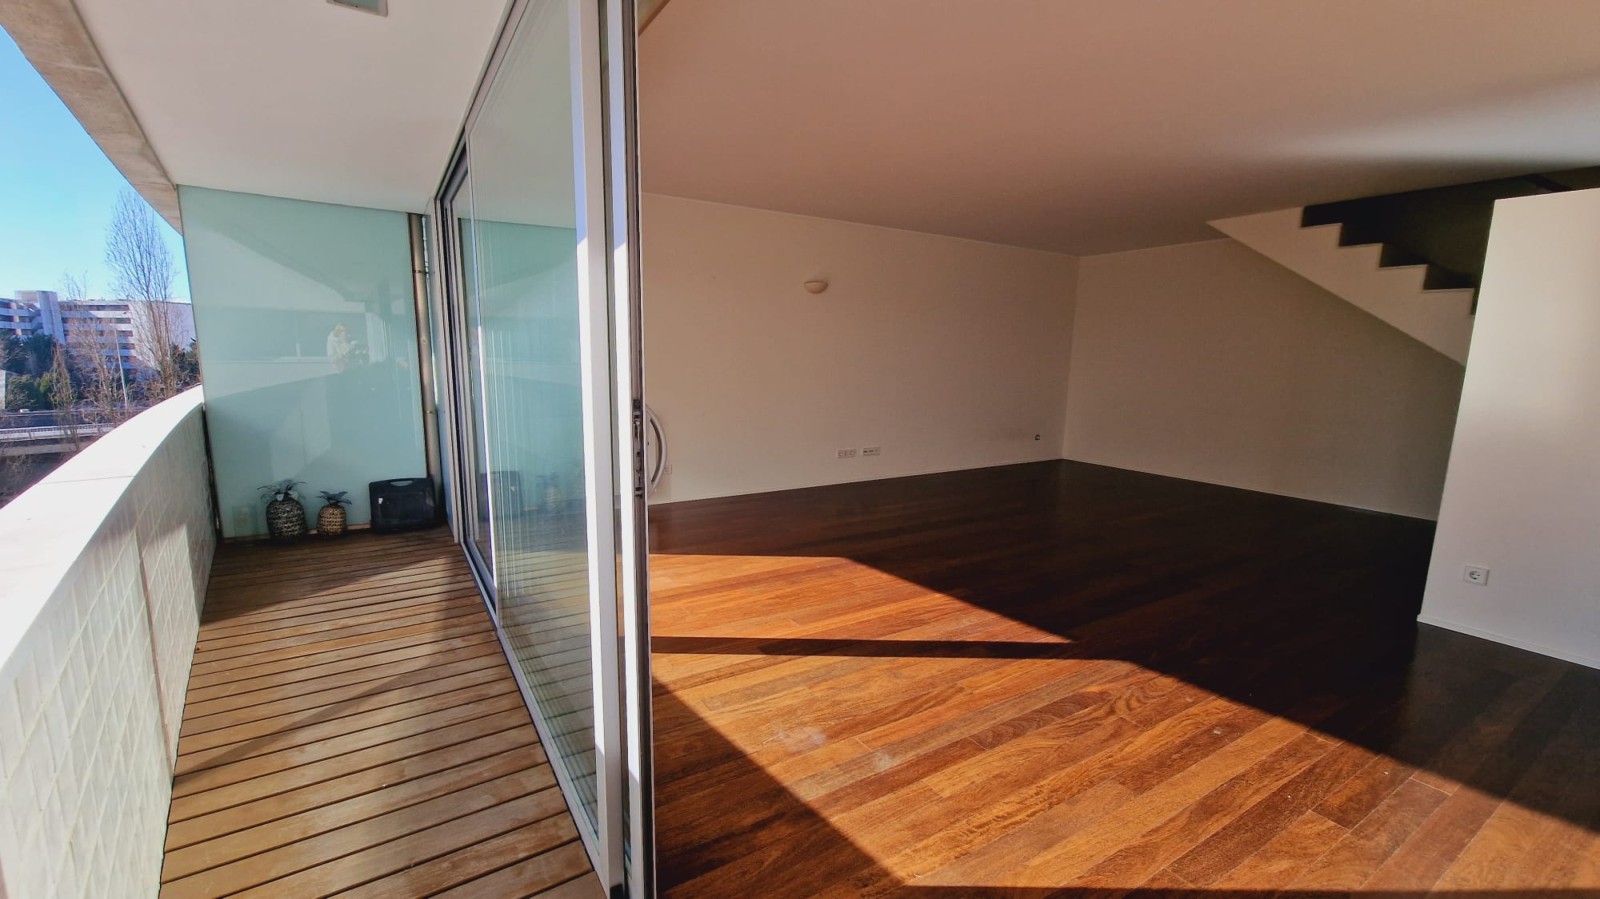 Apartamento duplex com varanda, para venda, em Lordelo do Ouro_219120